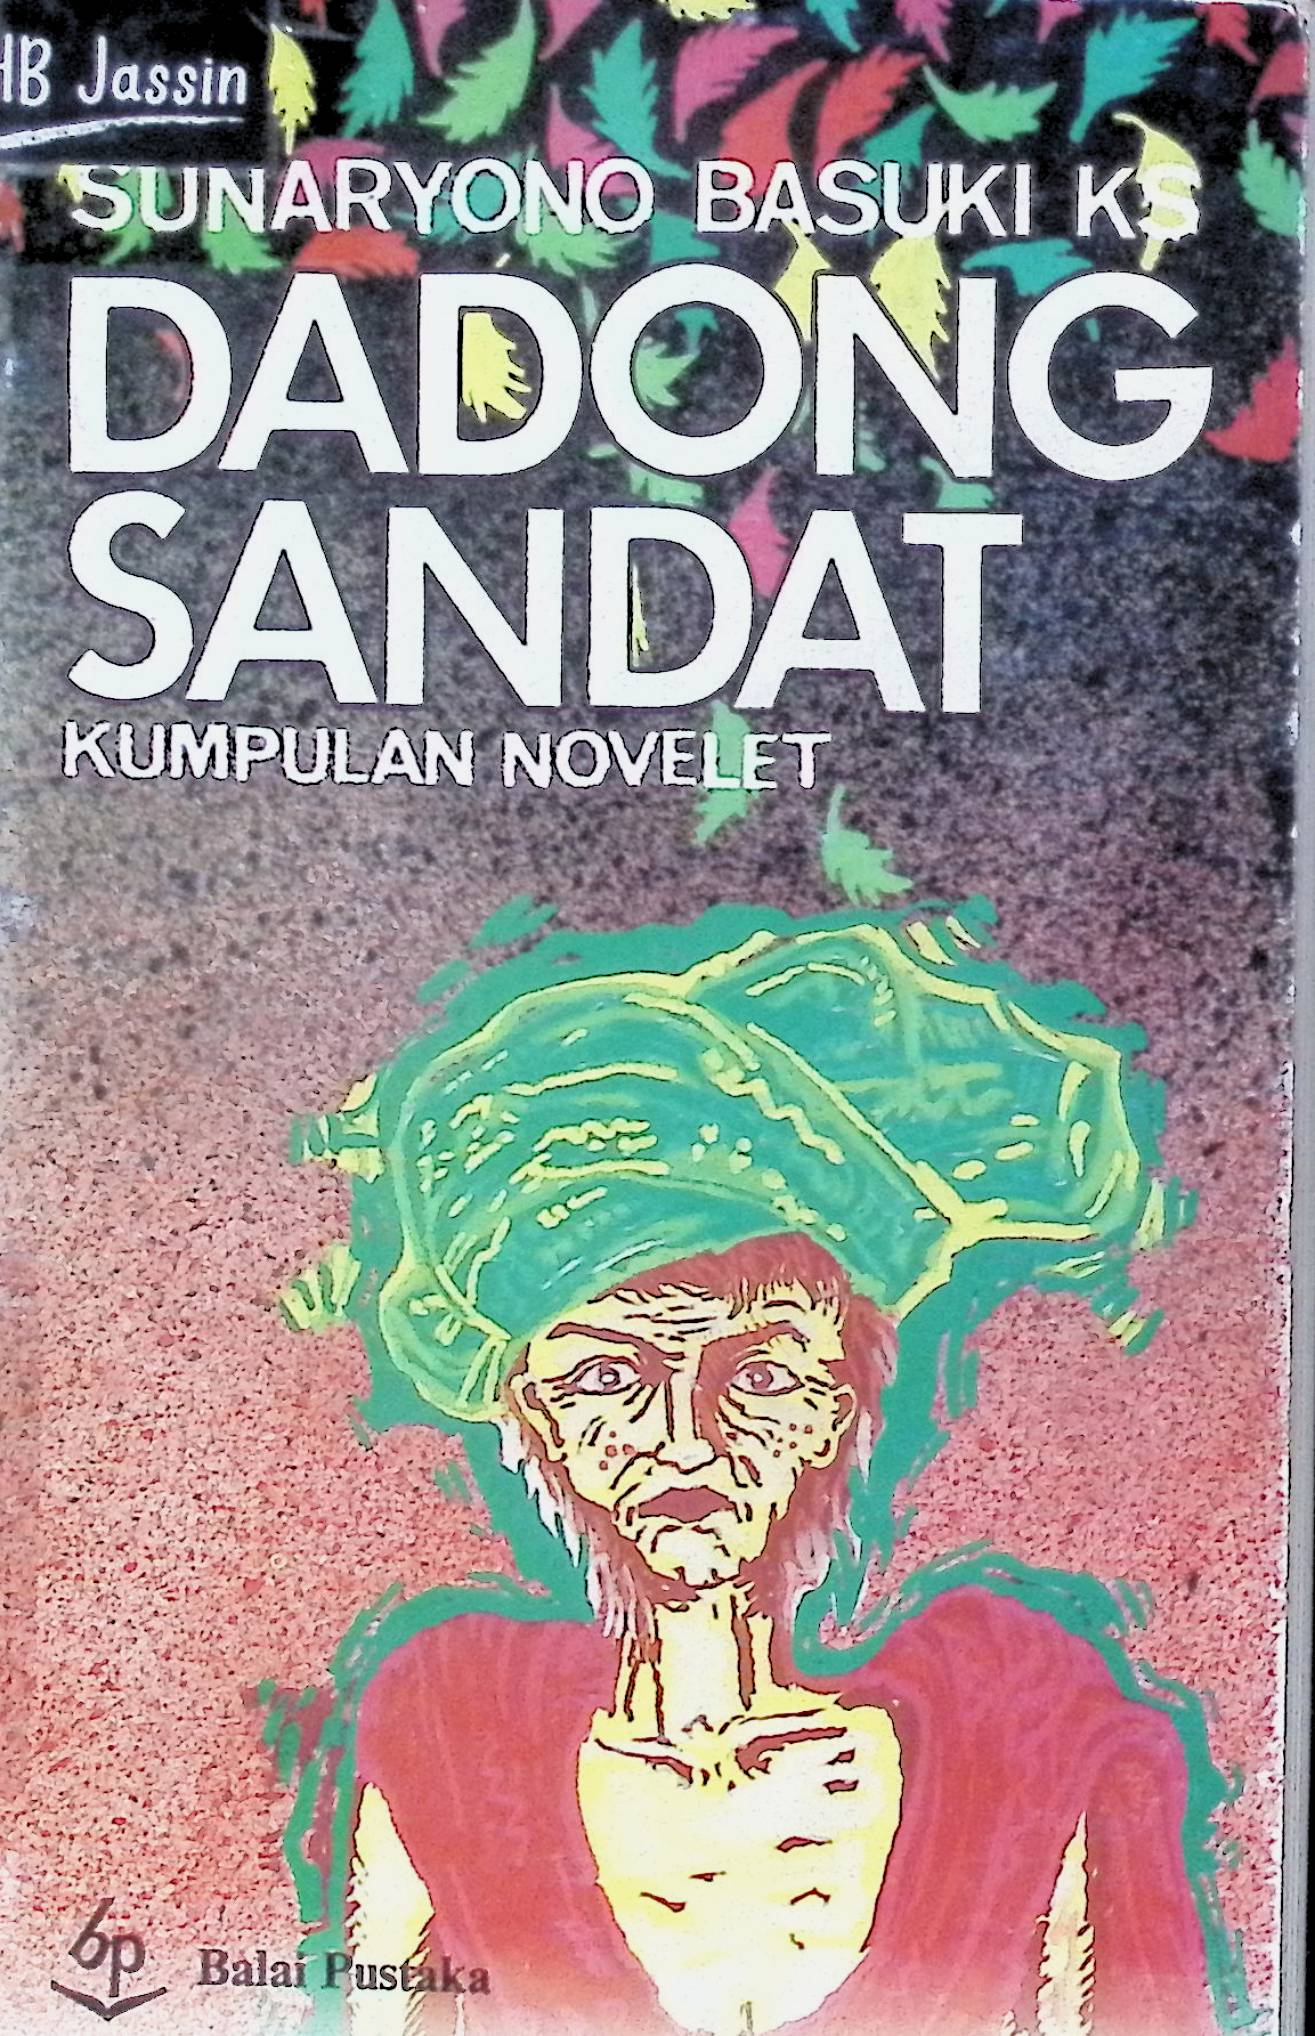 Dadong Sandat